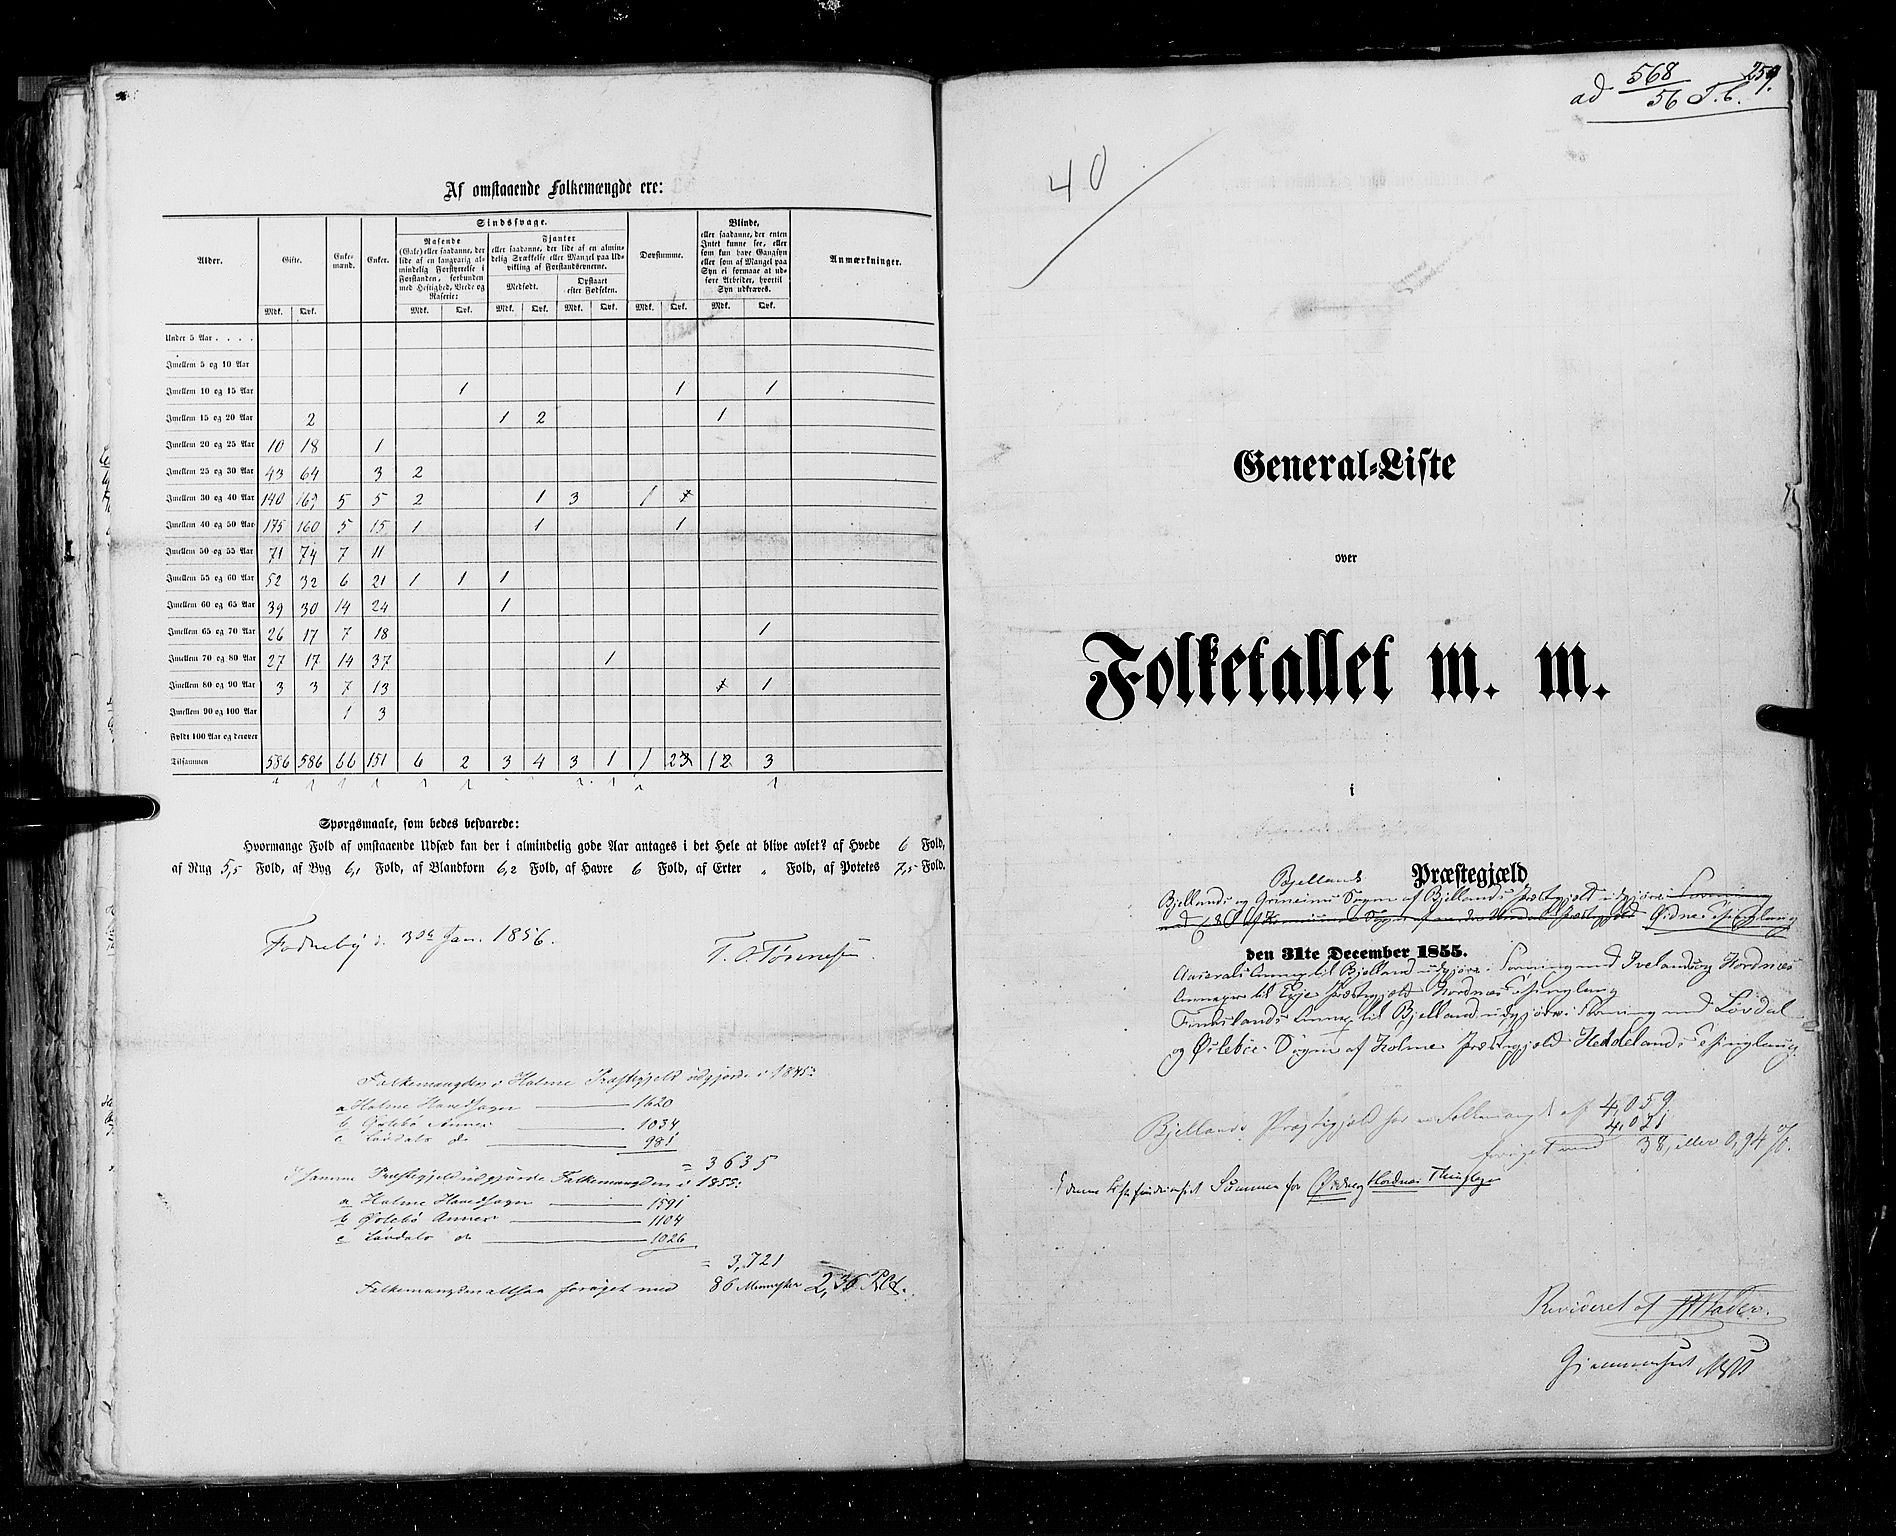 RA, Census 1855, vol. 3: Bratsberg amt, Nedenes amt og Lister og Mandal amt, 1855, p. 259